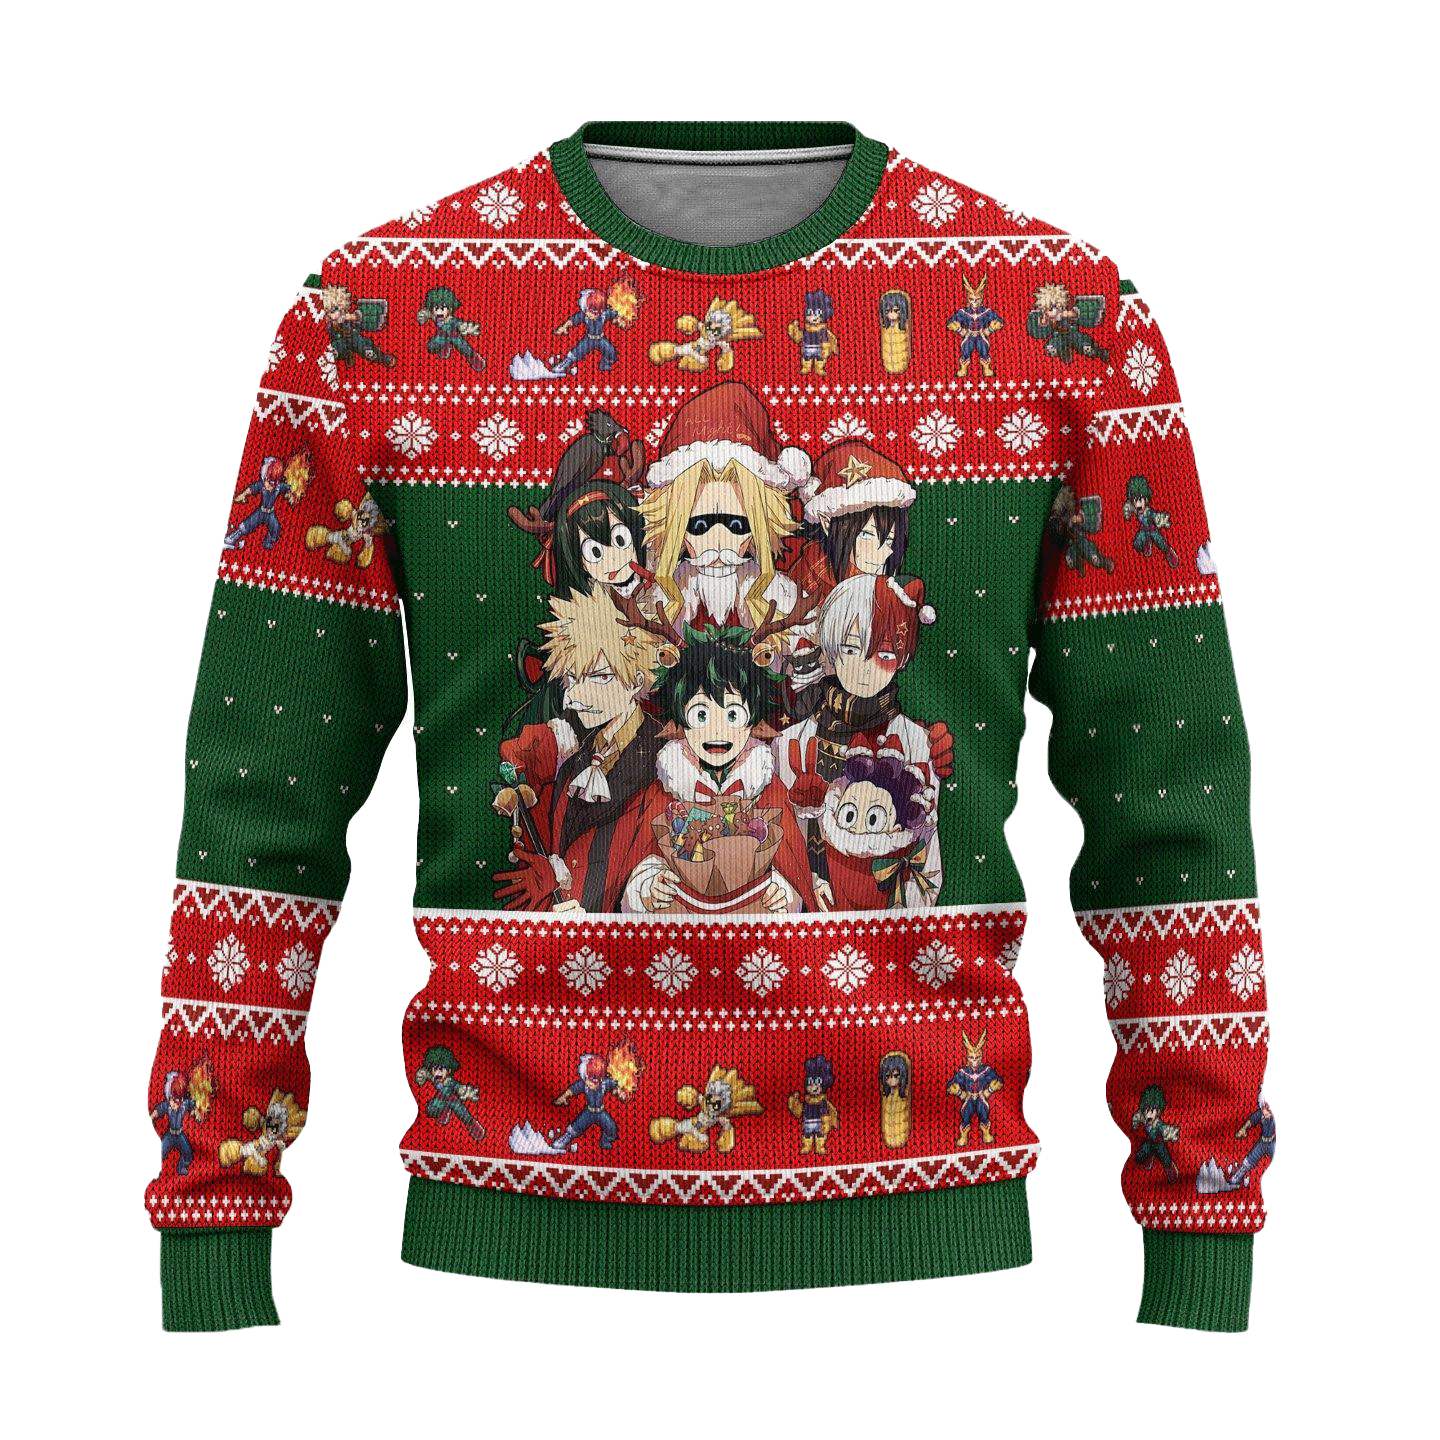 BNHA Ugly Christmas Sweater My Hero Academia Anime Xmas Gift